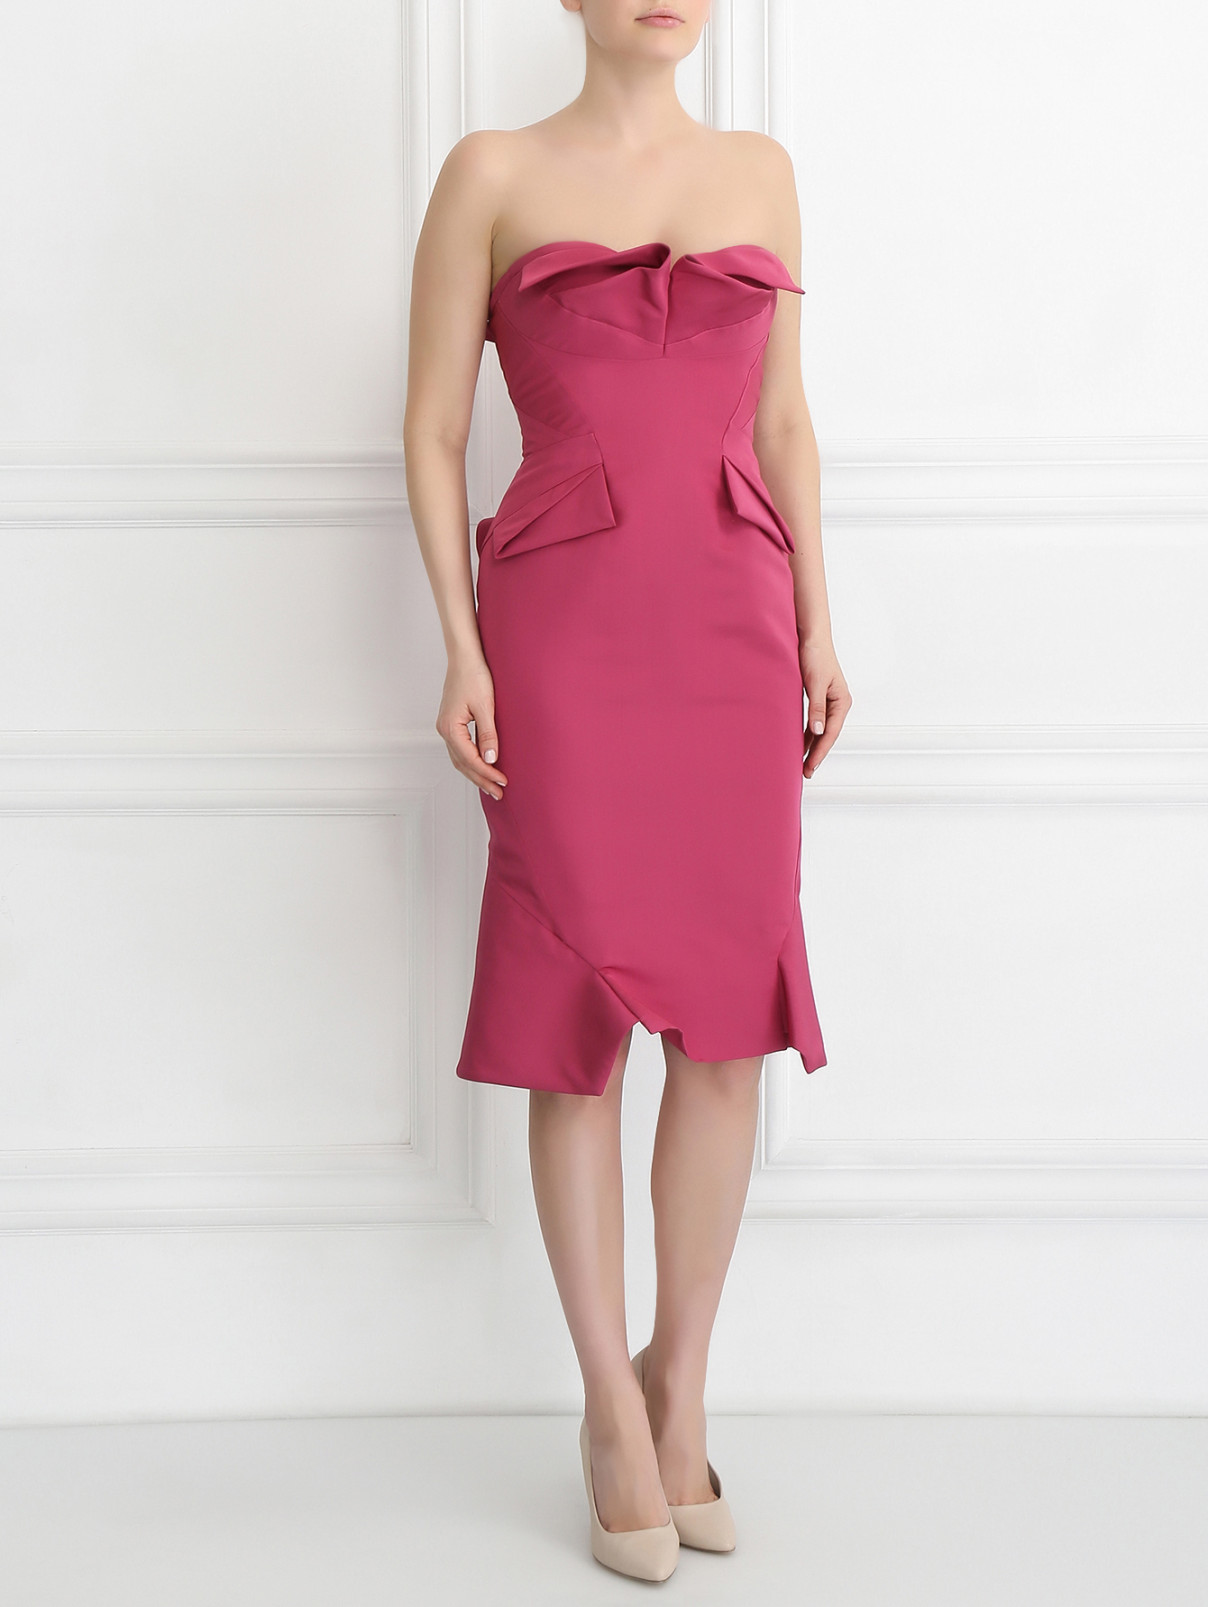 Платье-футляр из шелка без рукавов Zac Posen  –  Модель Общий вид  – Цвет:  Фиолетовый